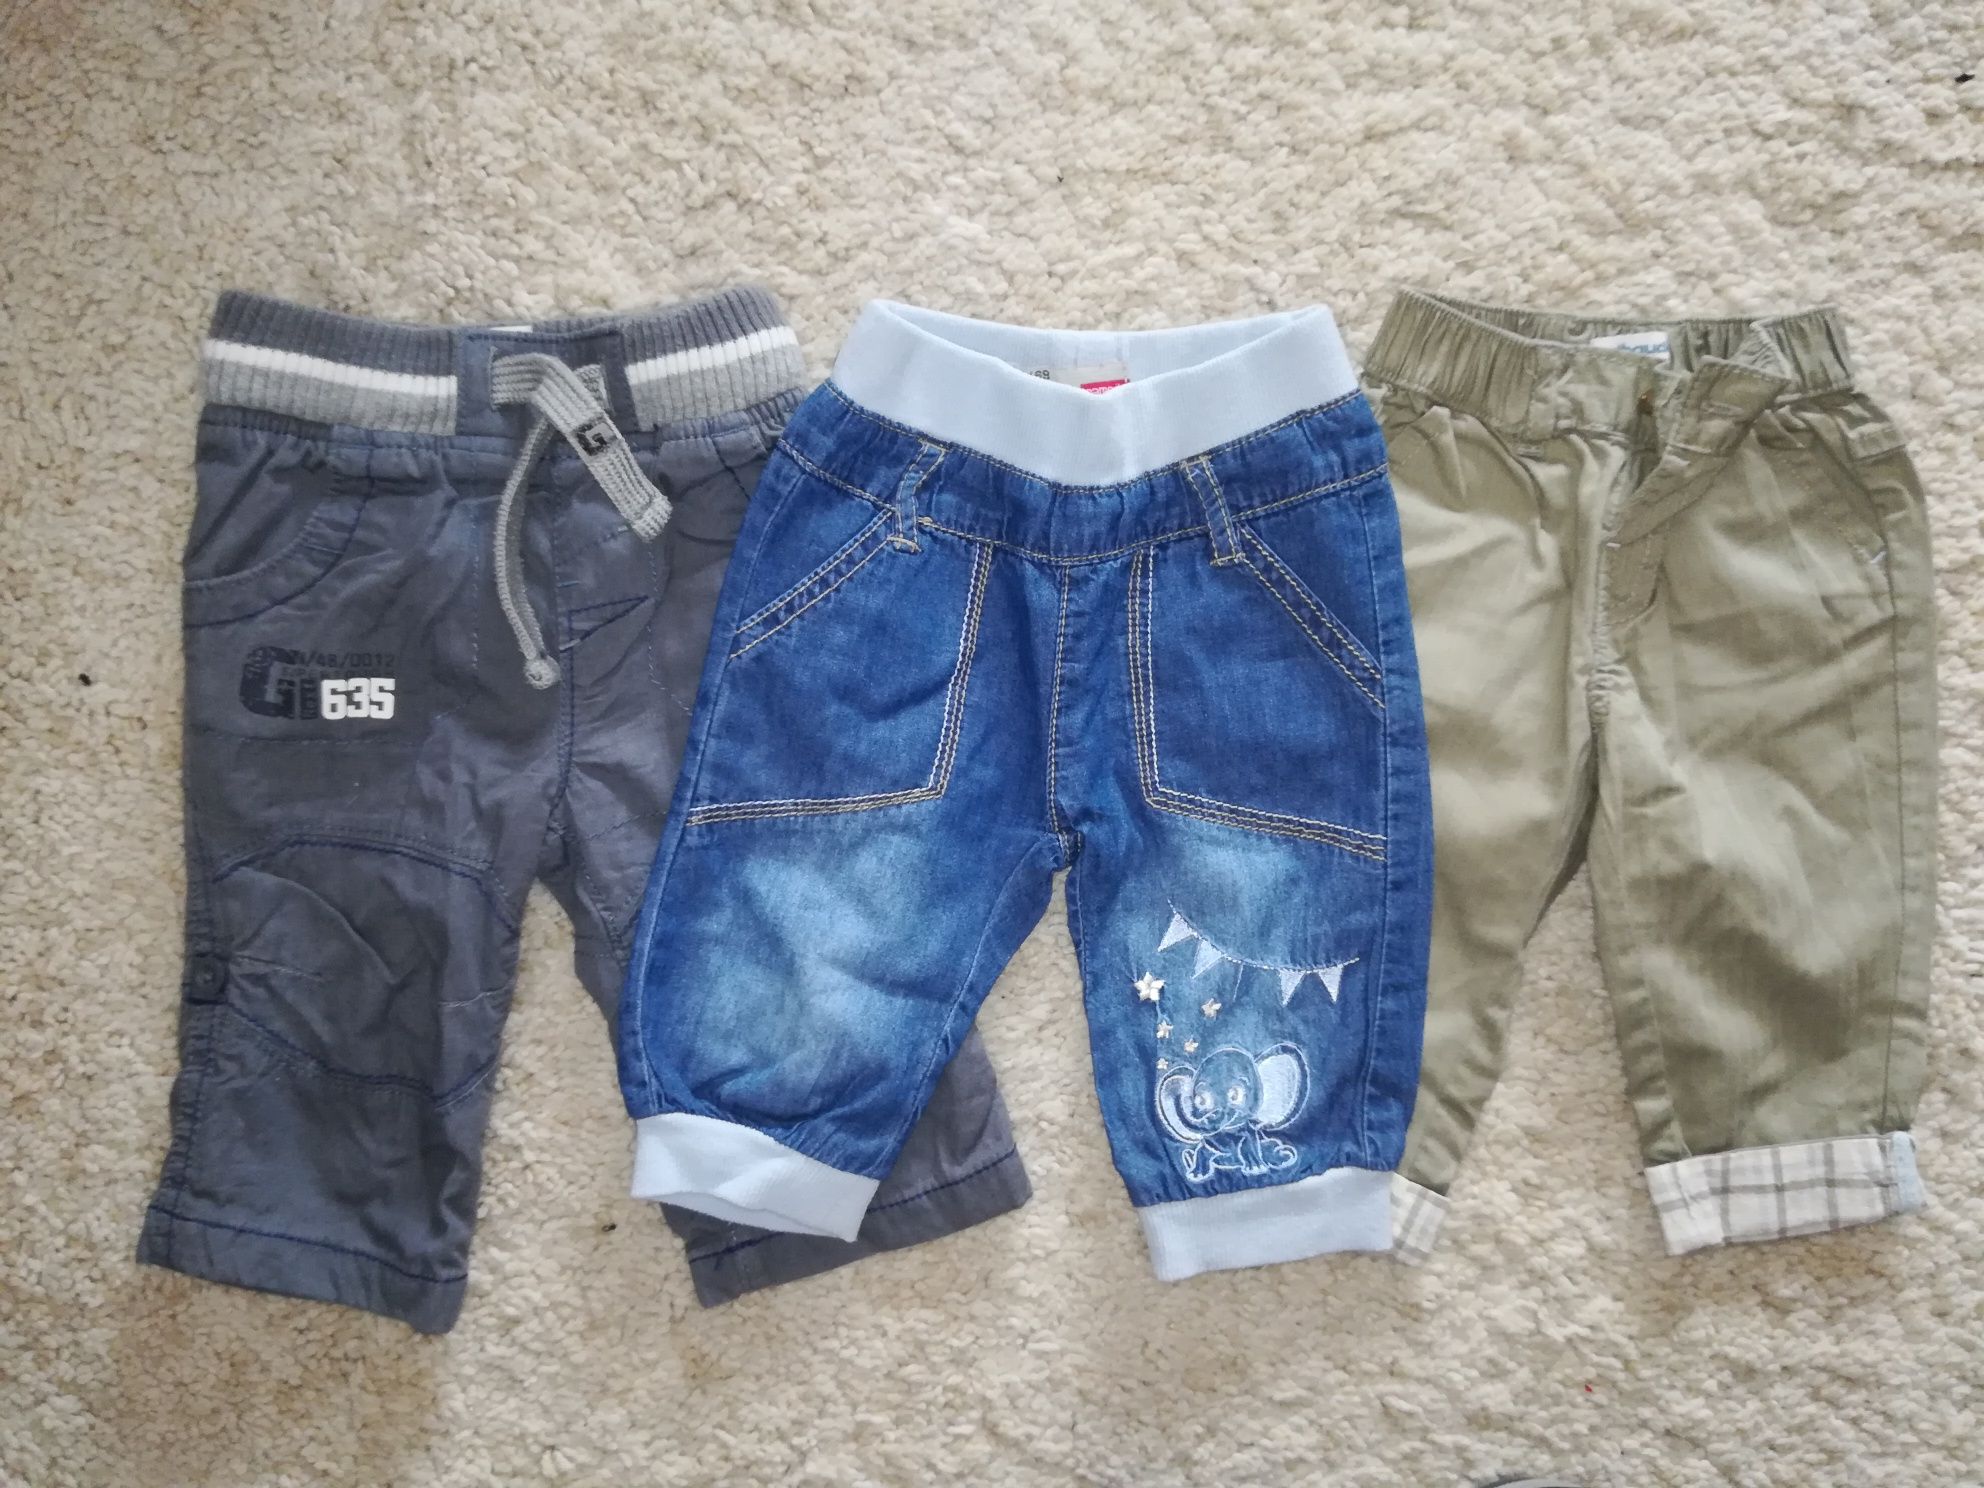 Zestaw 3 pary spodni niemowlęcych jeansy,  ocieplane rozm 68-74cm 3-6m